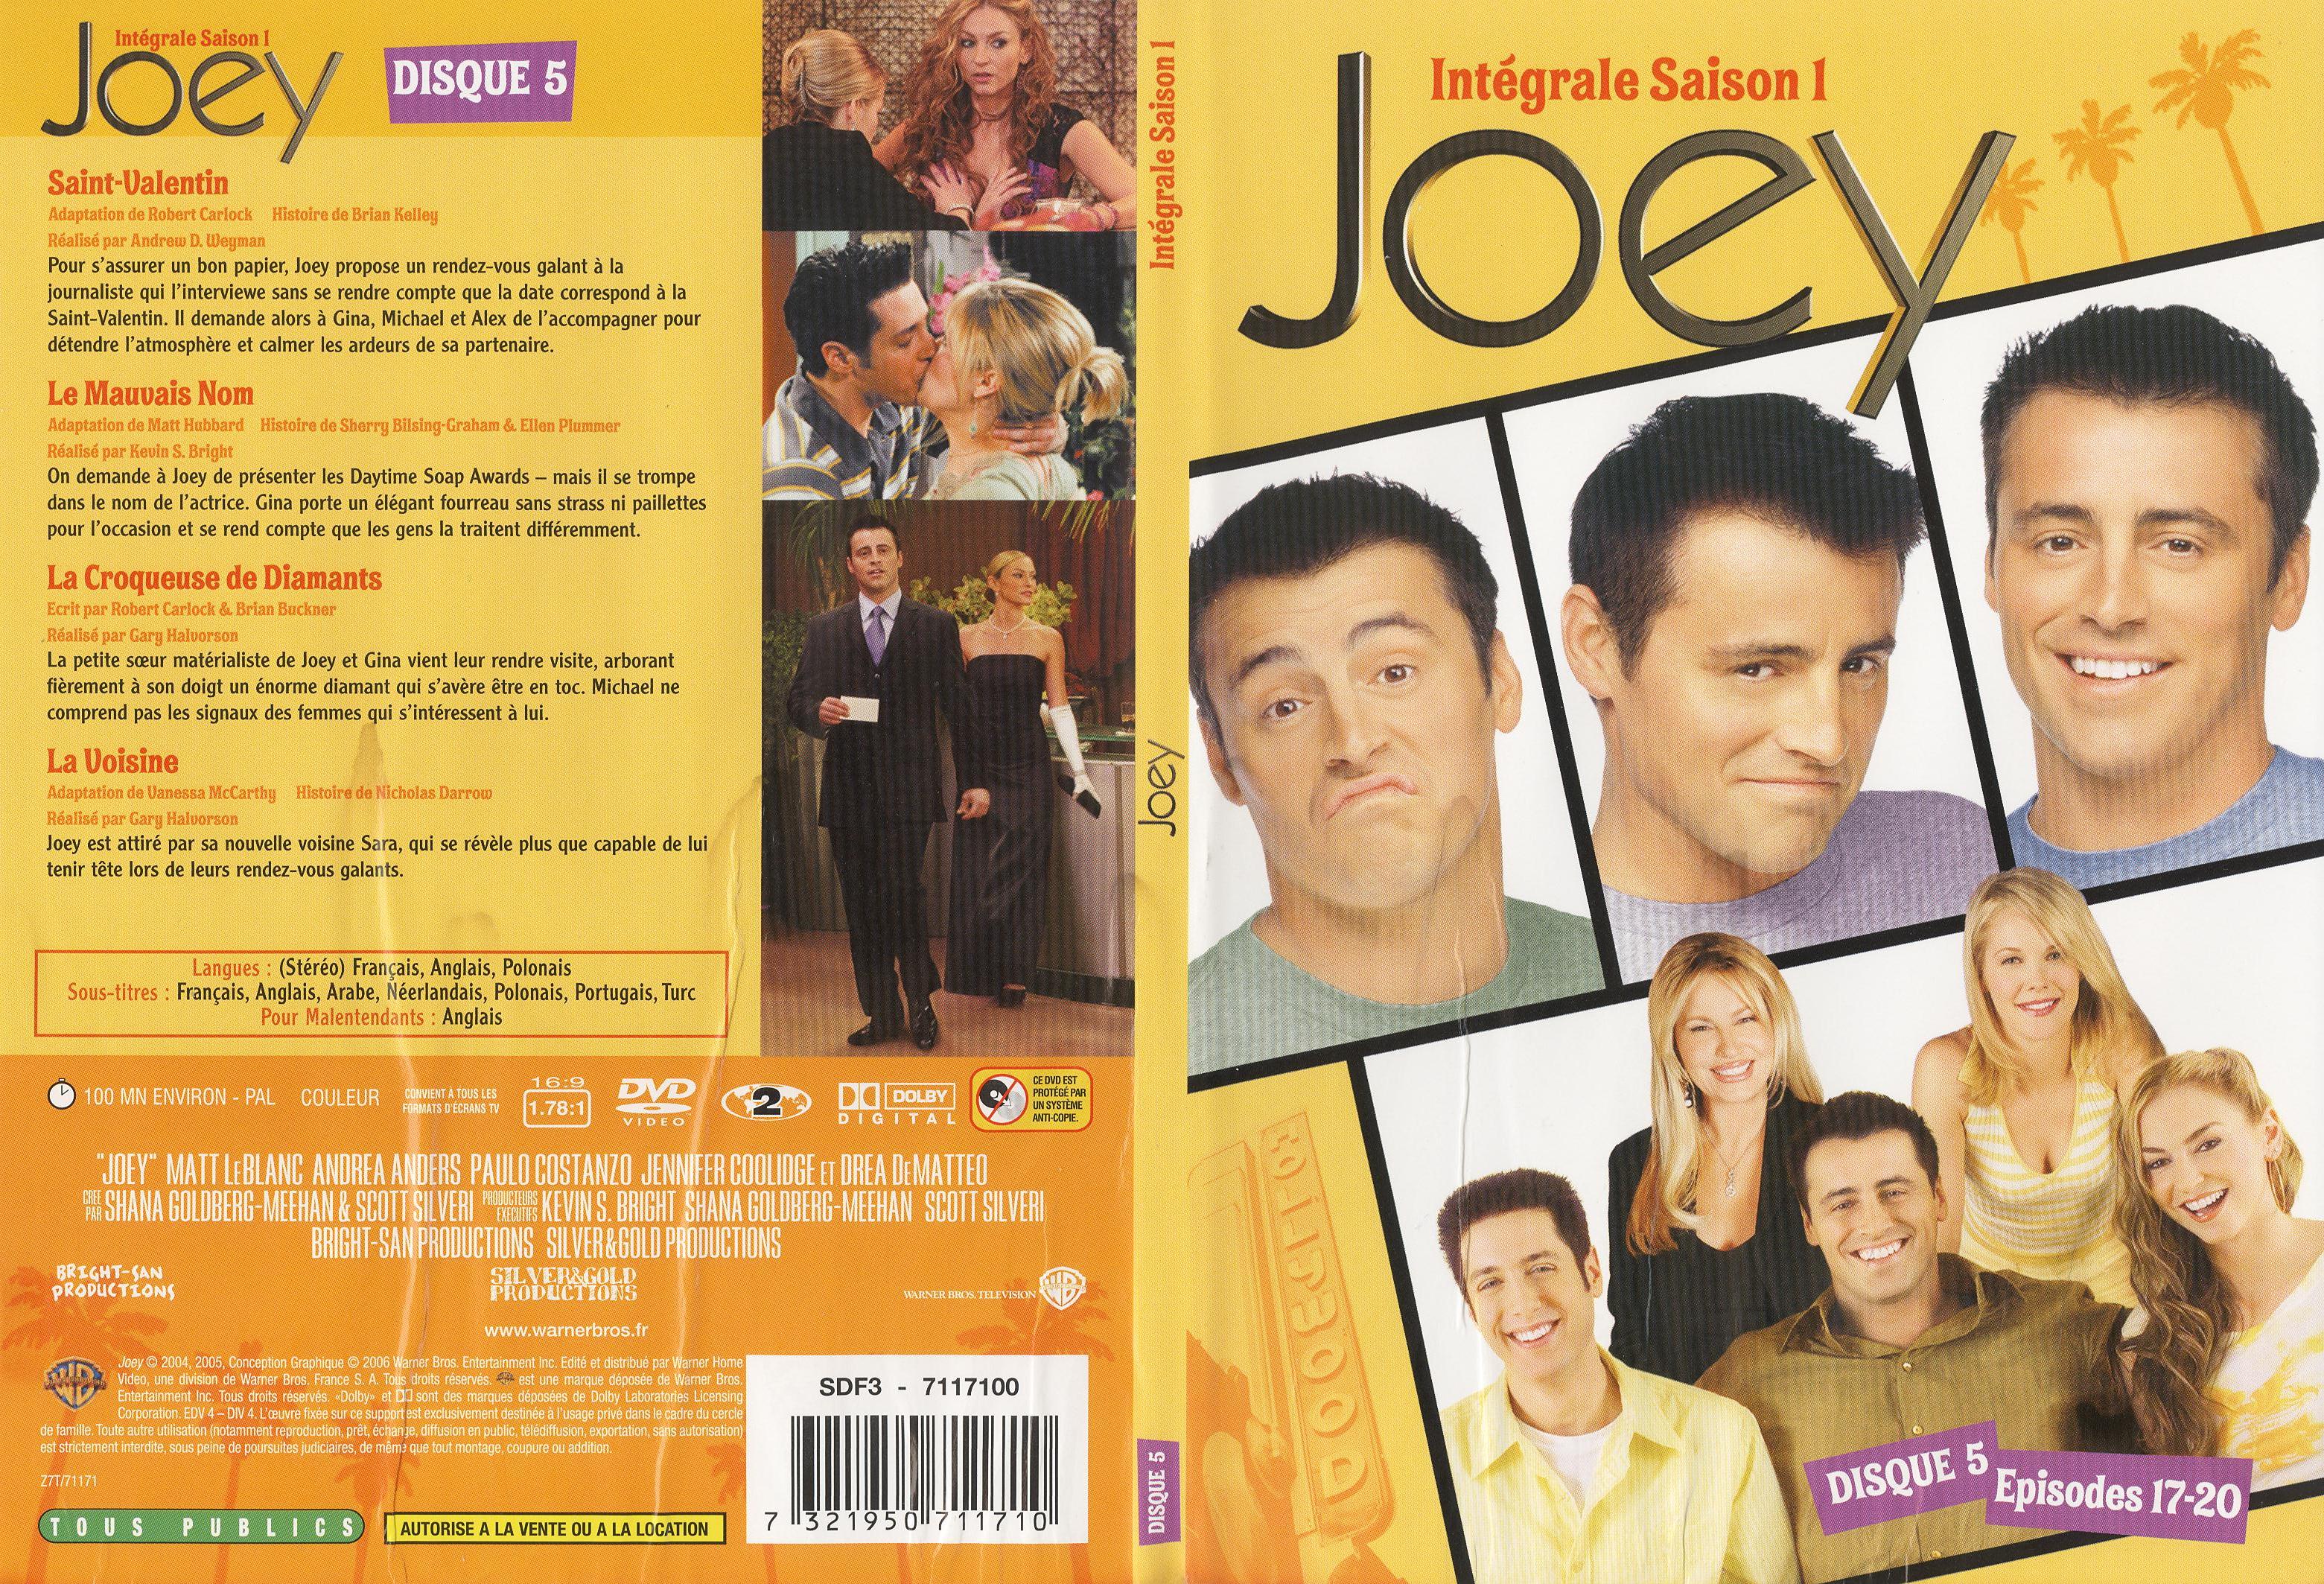 Jaquette DVD Joey Saison 1 DVD 5